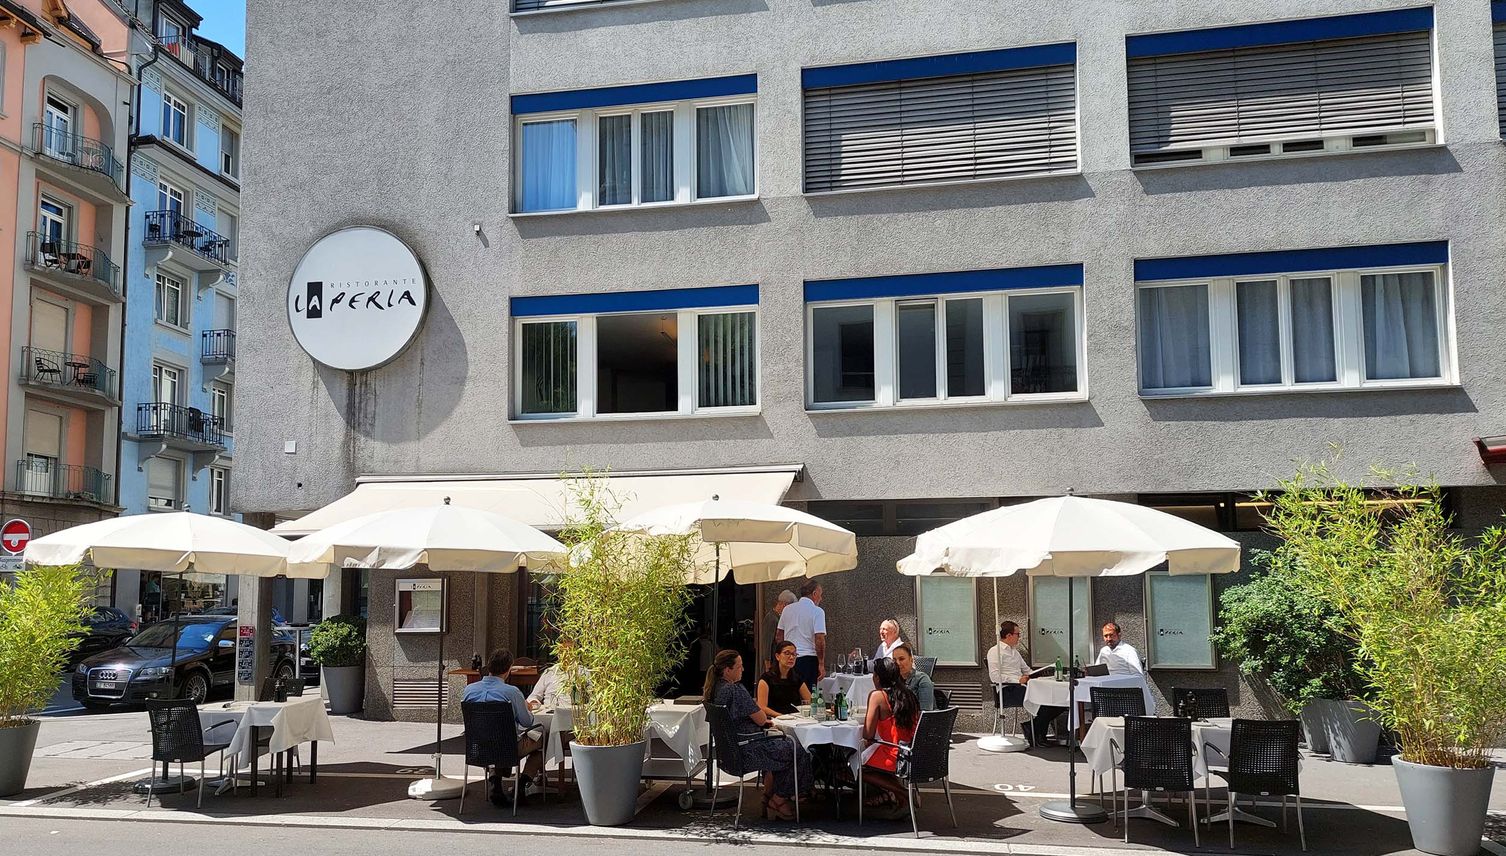 La Perla: Luzerner Restaurant schliesst nach 33 Jahren